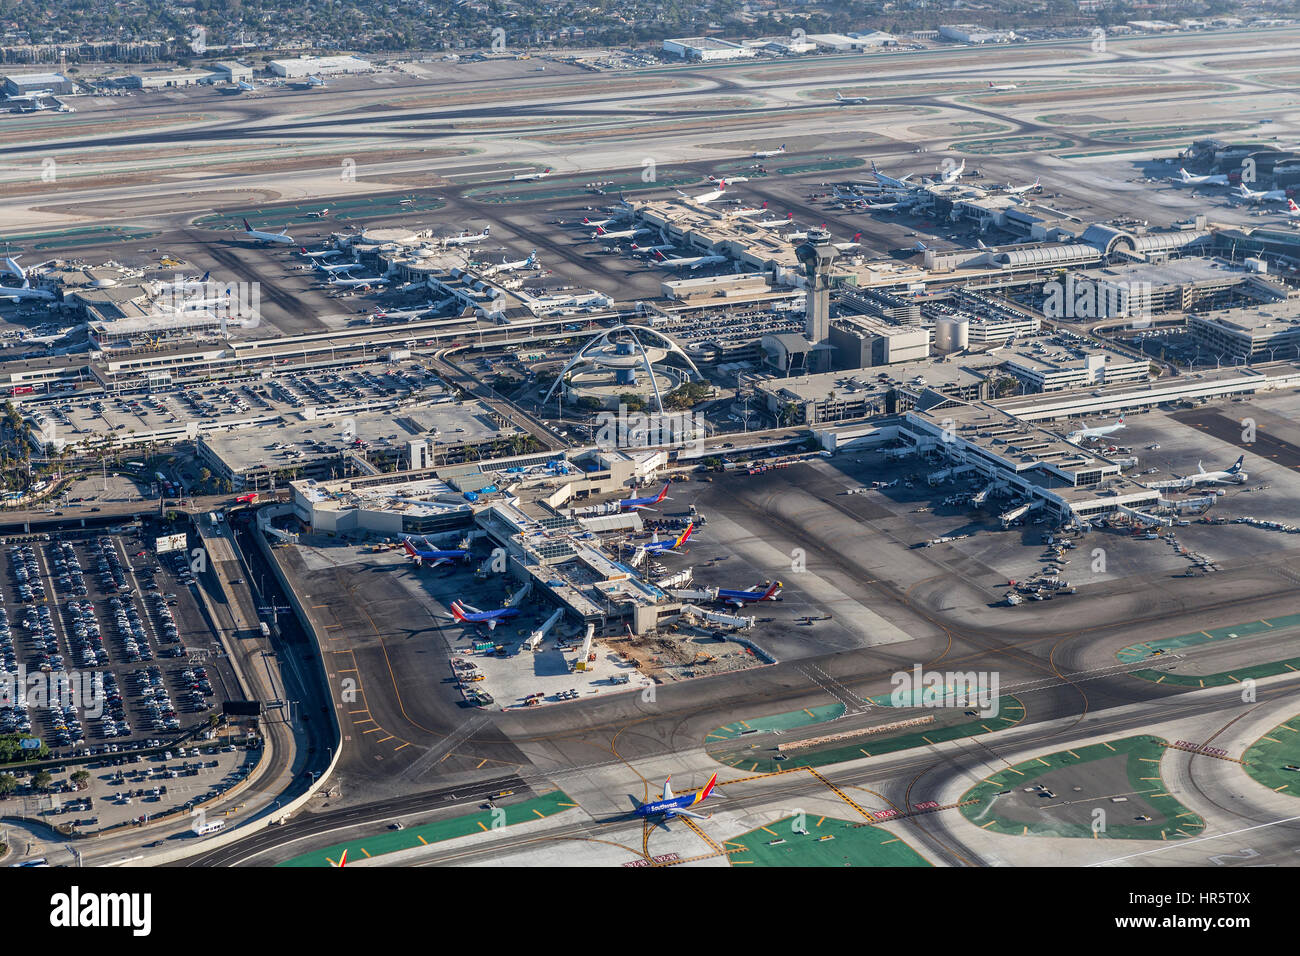 Los Angeles, Kalifornien, USA - 16. August 2016: Am Nachmittag Luftaufnahme des Los Angeles International Airport-Terminals und Start-und Landebahnen. Stockfoto